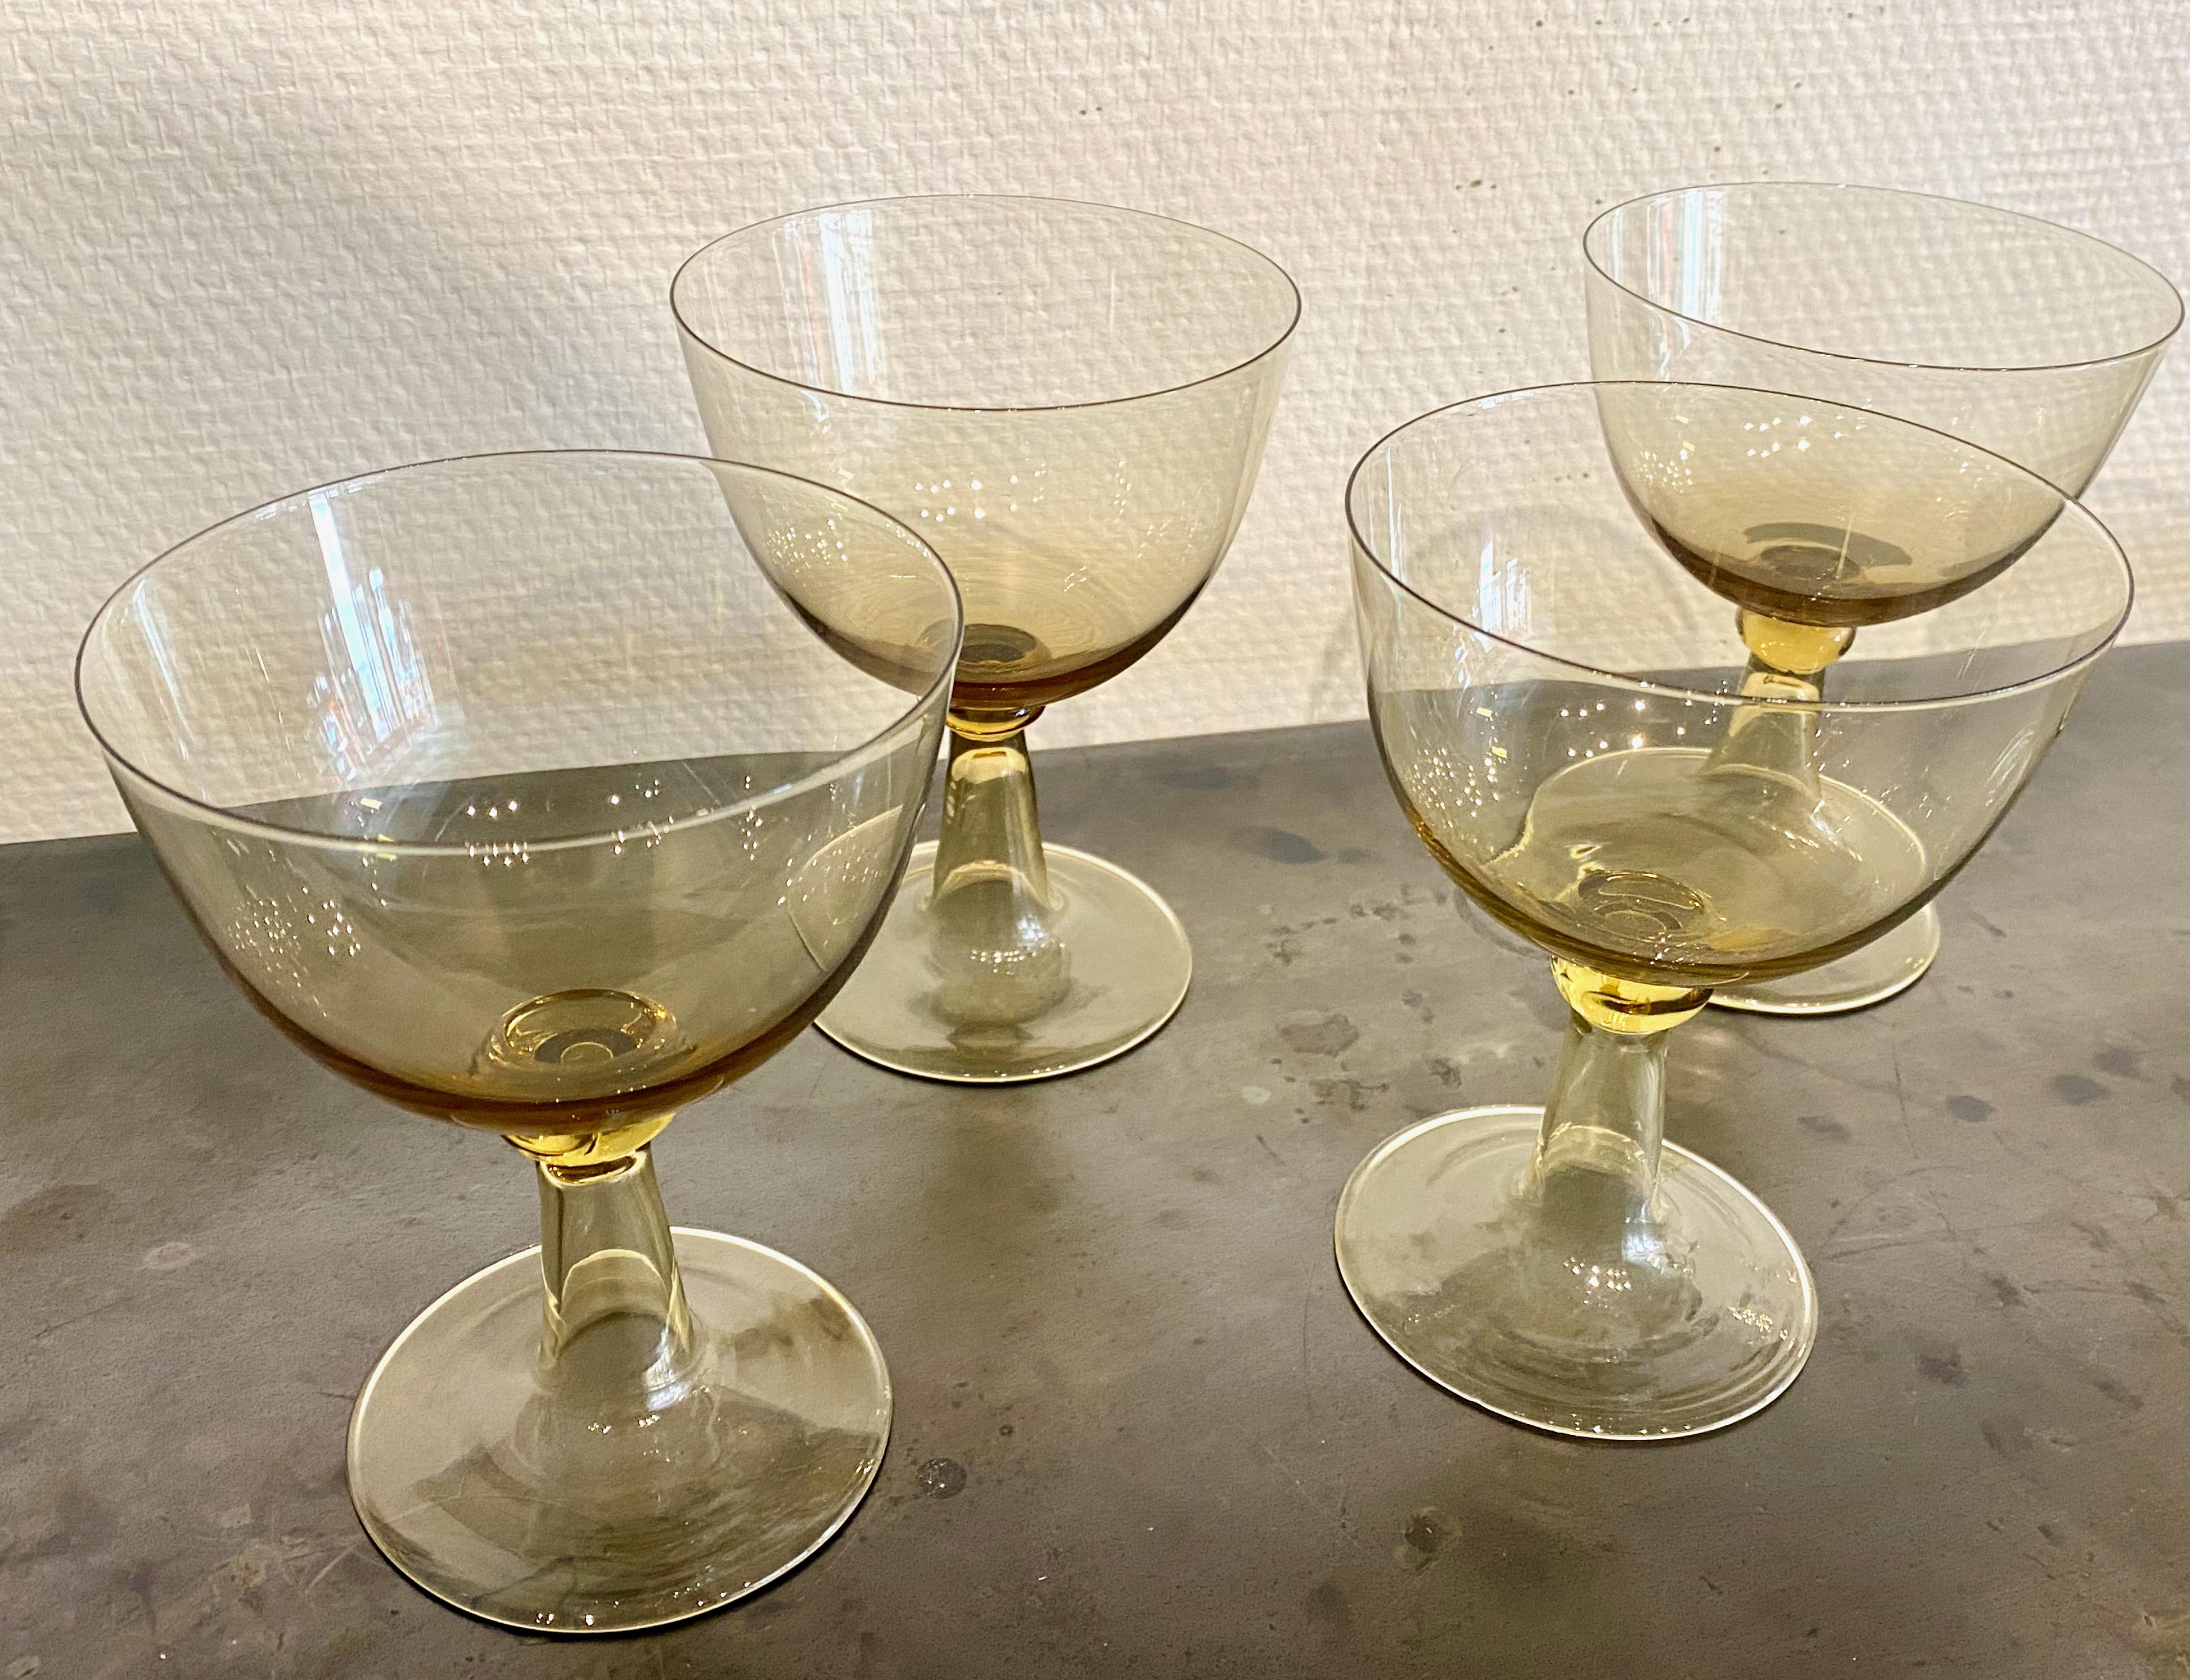 Set von 6 schönen Coupé-Gläsern, entworfen von Josef Frank für die Firma Svenskt tenn. Aus dem auslaufenden Muster Murano, das in den frühen 1950er Jahren entworfen wurde. Leicht champagnerfarben verleihen sie jedem Tisch und jedem Dessert